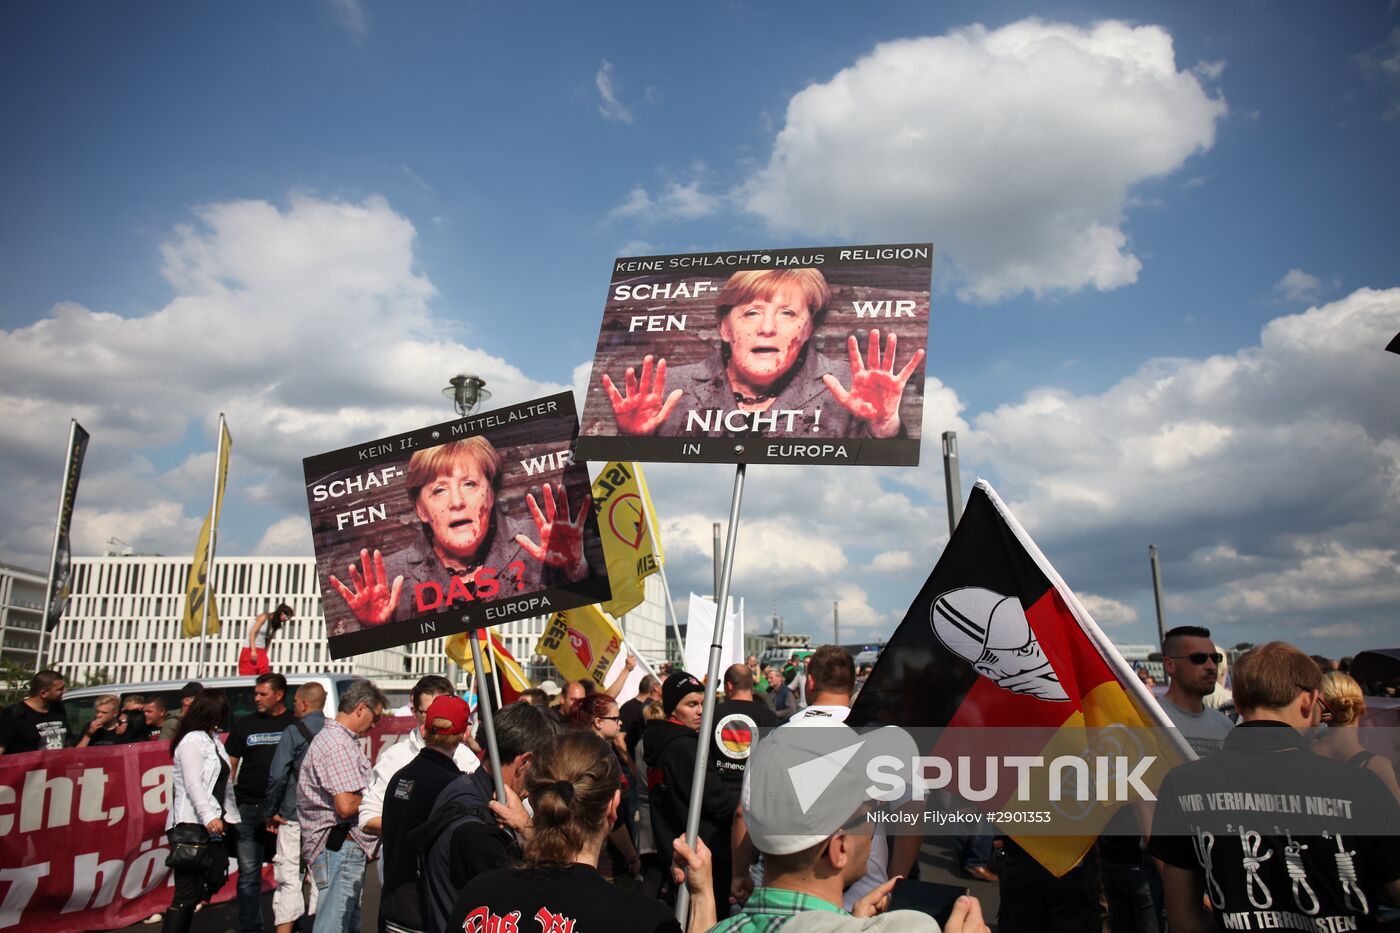 Protests in Berlin against Angela Merkel policies